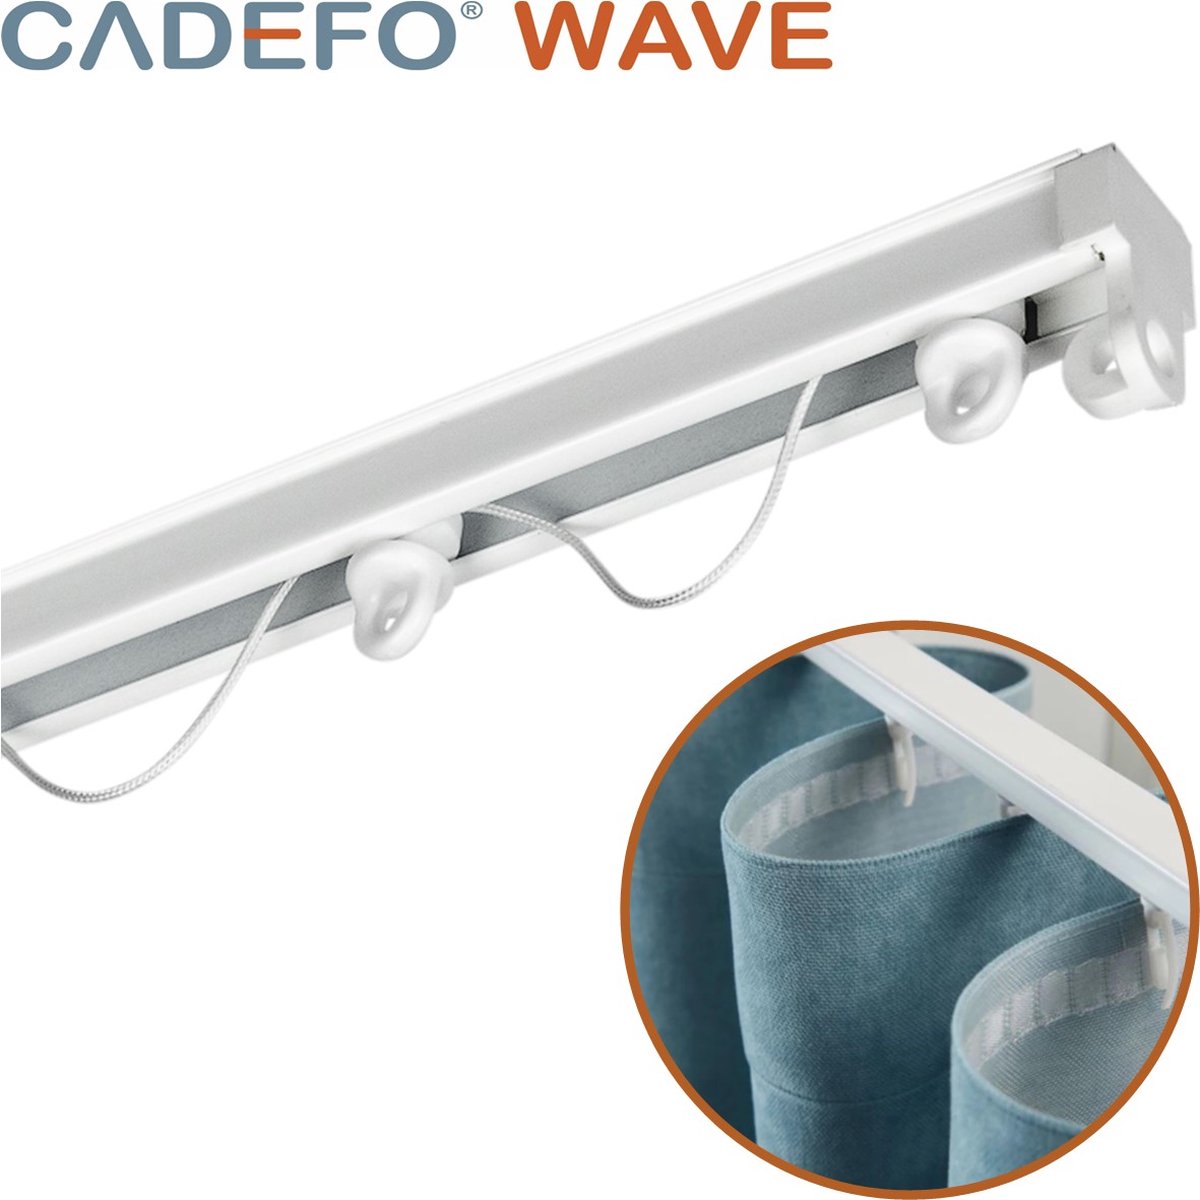 CADEFO WAVE (501 - 550 cm) Gordijnrails - Compleet op maat! - UIT 1 STUK - Leverbaar tot 6 meter - Plafondbevestiging - Lengte 547 cm